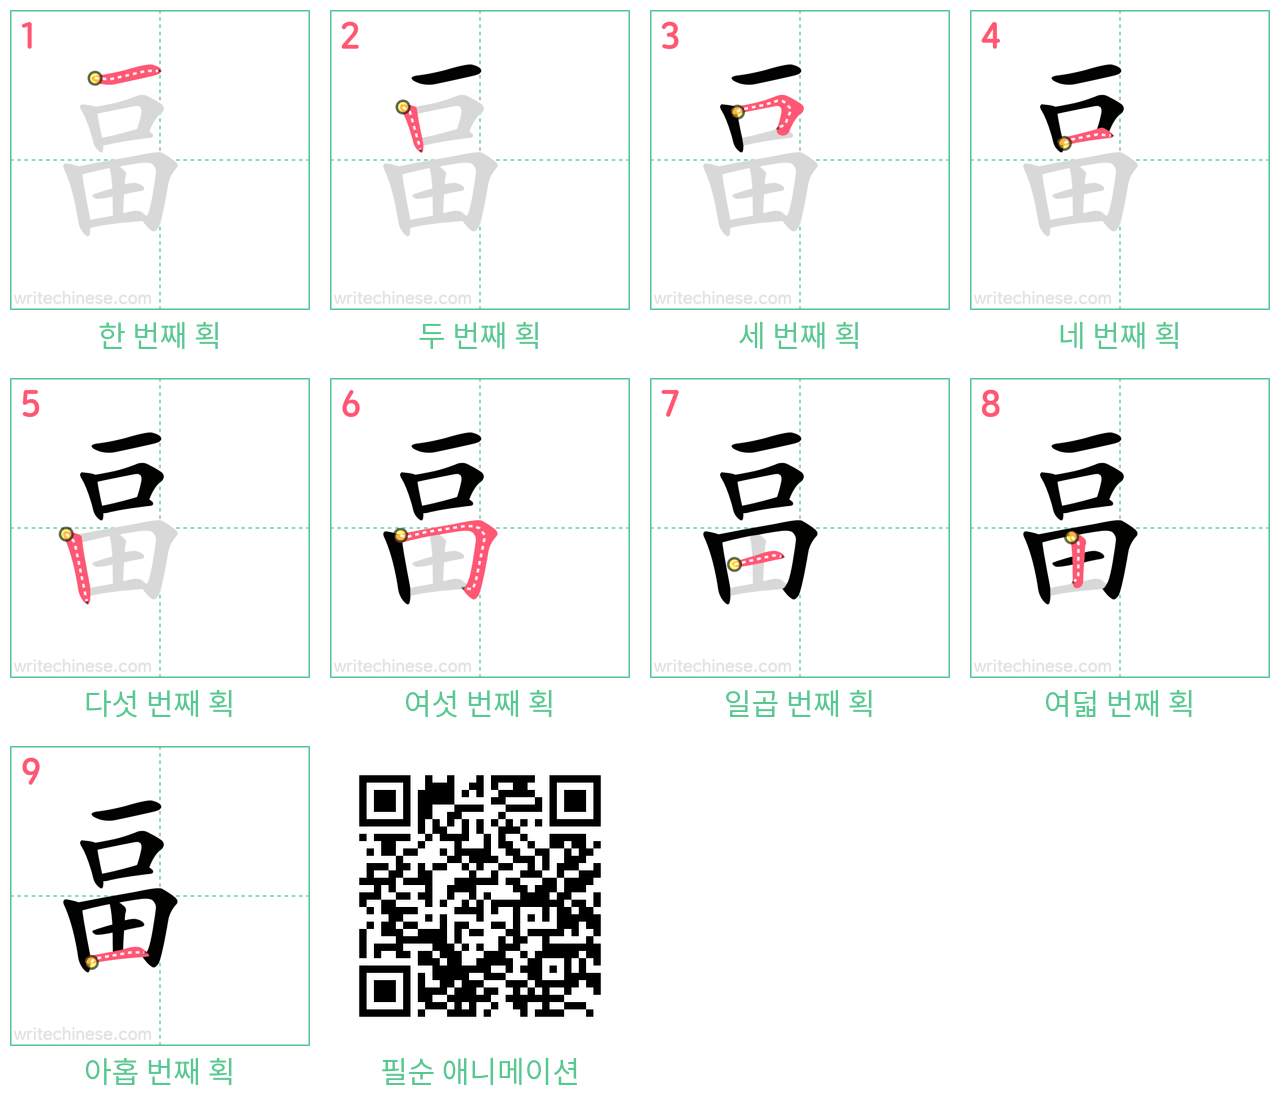 畐 step-by-step stroke order diagrams